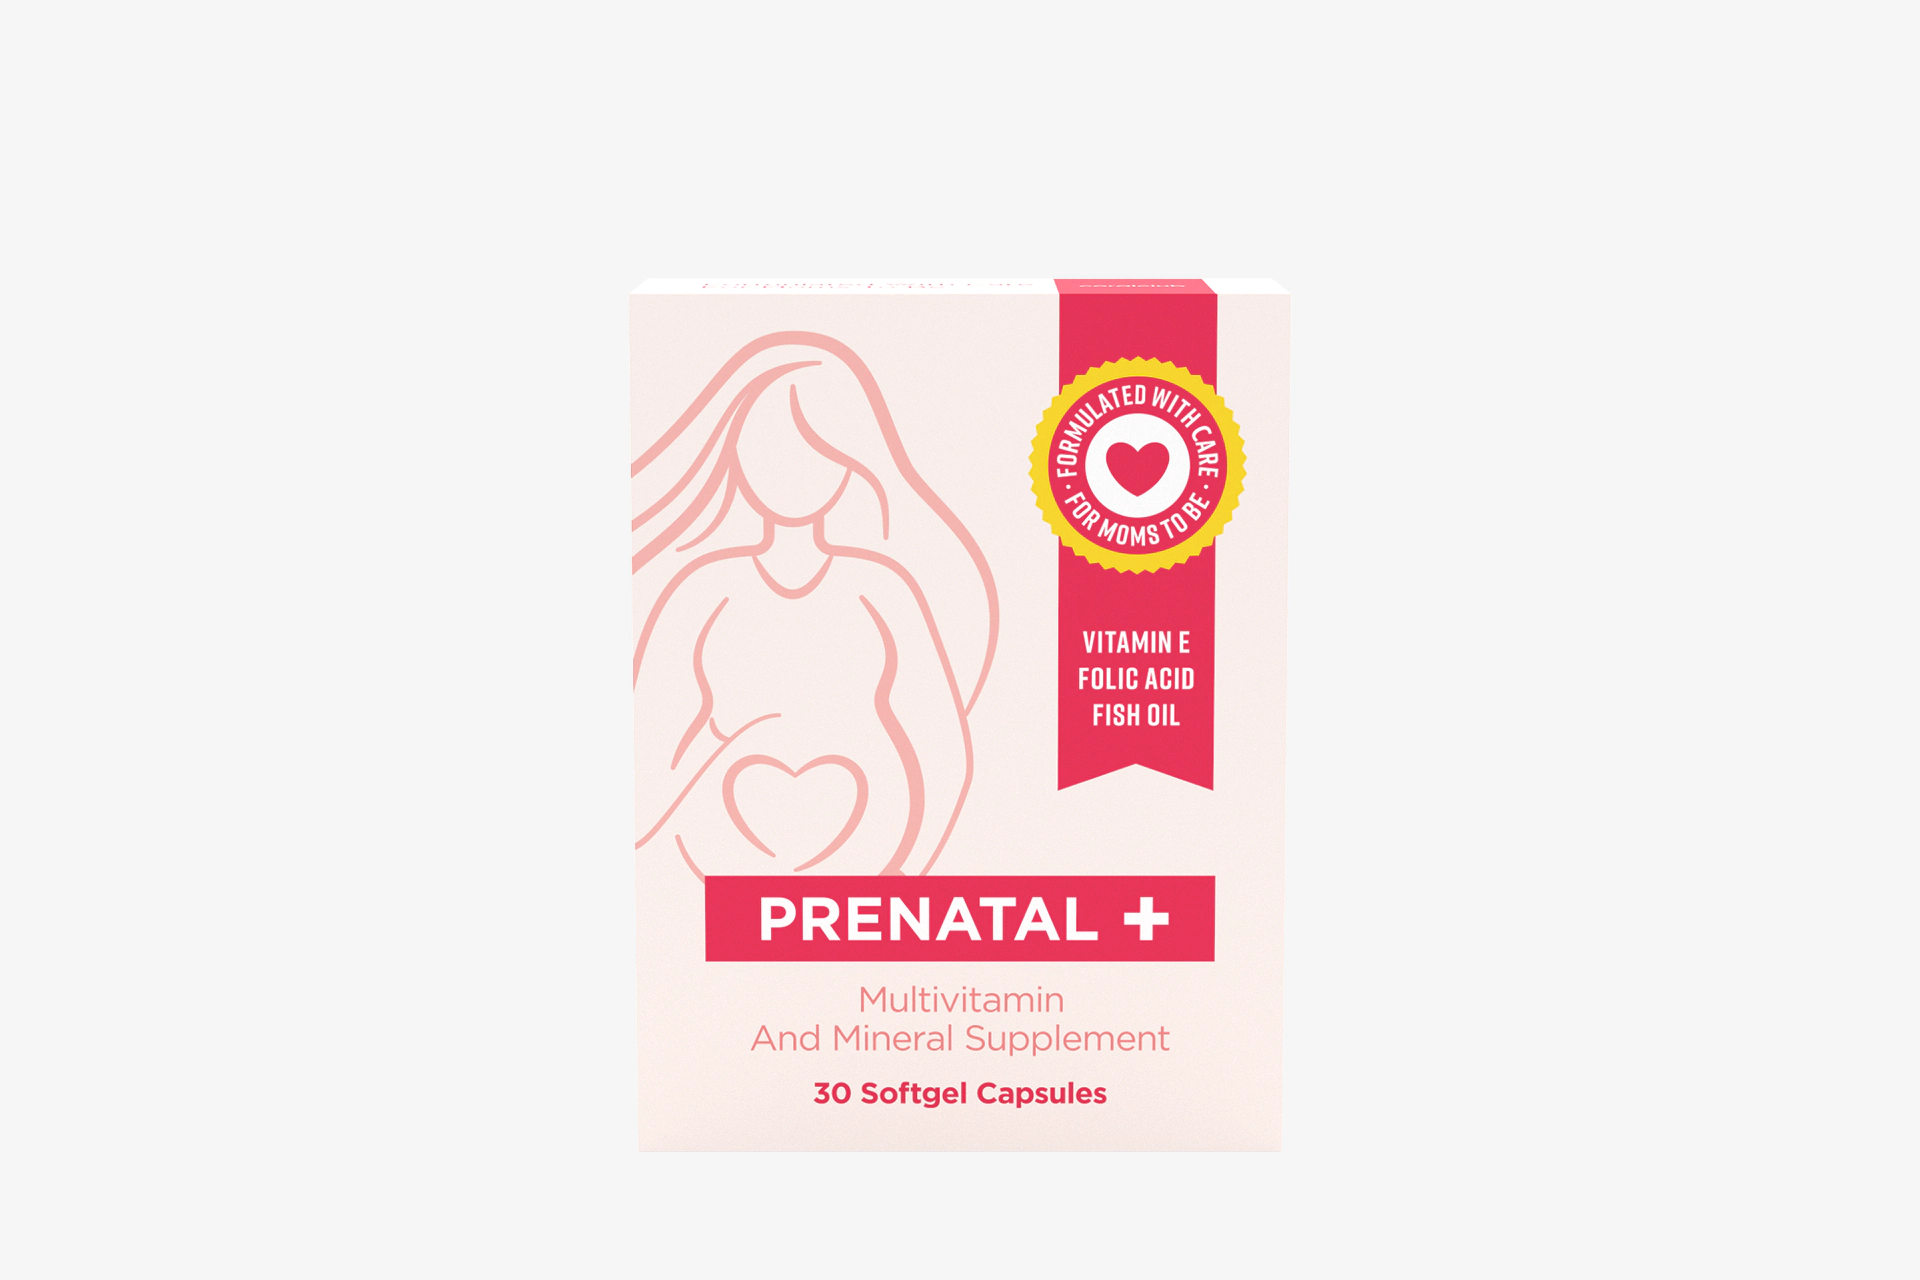 Пренатал+ (30 капсул): https://ru.coral.club/shop/prenatal.html
Витаминно-минеральный комплекс для поддержания здоровья будущей матери и ребенка. Способствует оптимальному течению беременности и снижению риска врожденных аномалий у плода. При планировании беременности рекомендуется принимать обоим родителям за 3-4 месяца до зачатия.


ПНЖК ОМЕГА-3 (ДГК)

Один из ключевых компонентов, обеспечивающих здоровье будущей мамы и её малыша. ДГК проникает через плаценту, участвуя в развитии мозга, нервной системы и глаз ребенка. ДГК помогает укрепить стенки сосудов, нормализовать работу сердца, понизить уровень «плохого» холестерина. Достаточный уровень ДГК в организме беременной женщины снижает риск преждевременных родов.



ВИТАМИН D

Во время беременности особенно необходим, так как без него кальций усваивается в меньшей степени. Его дефицит может привести к рахиту, одним из проявлений которого является неправильное формирование скелета.



ВИТАМИНЫ ГРУППЫ B

Важны для функционирования нервной системы, принимают активное участие в обменных процессах при формировании плода. Дефицит витаминов В9 и В12 может приводить к нарушениям формирования нервной трубки плода, задержке внутриутробного развития, невынашиванию и риску преждевременных родов.



ВИТАМИН Е И НИАЦИН

Нужны для нормального развития плода и функционирования плаценты, в частности, принимают участие в формировании дыхательной системы малыша. Предотвращают возможные угрозы выкидыша на ранних сроках.



СЕЛЕН И ЦИНК

Предупреждают риск рождения ребенка с врожденными аномалиями (мышечная слабость, недоразвитие позвоночника, пороки сердца, заболевания дыхательной системы, нервные расстройства). Дефицит этих минералов способен спровоцировать поздний токсикоз, отеки, анемию и преждевременные роды.



ЙОД

Важен для нормального функционирования щитовидной железы. Дефицит этого элемента во время беременности может привести к нарушениям функции щитовидной железы у матери и развитию тиреоидных расстройств у ребенка.
Германия.